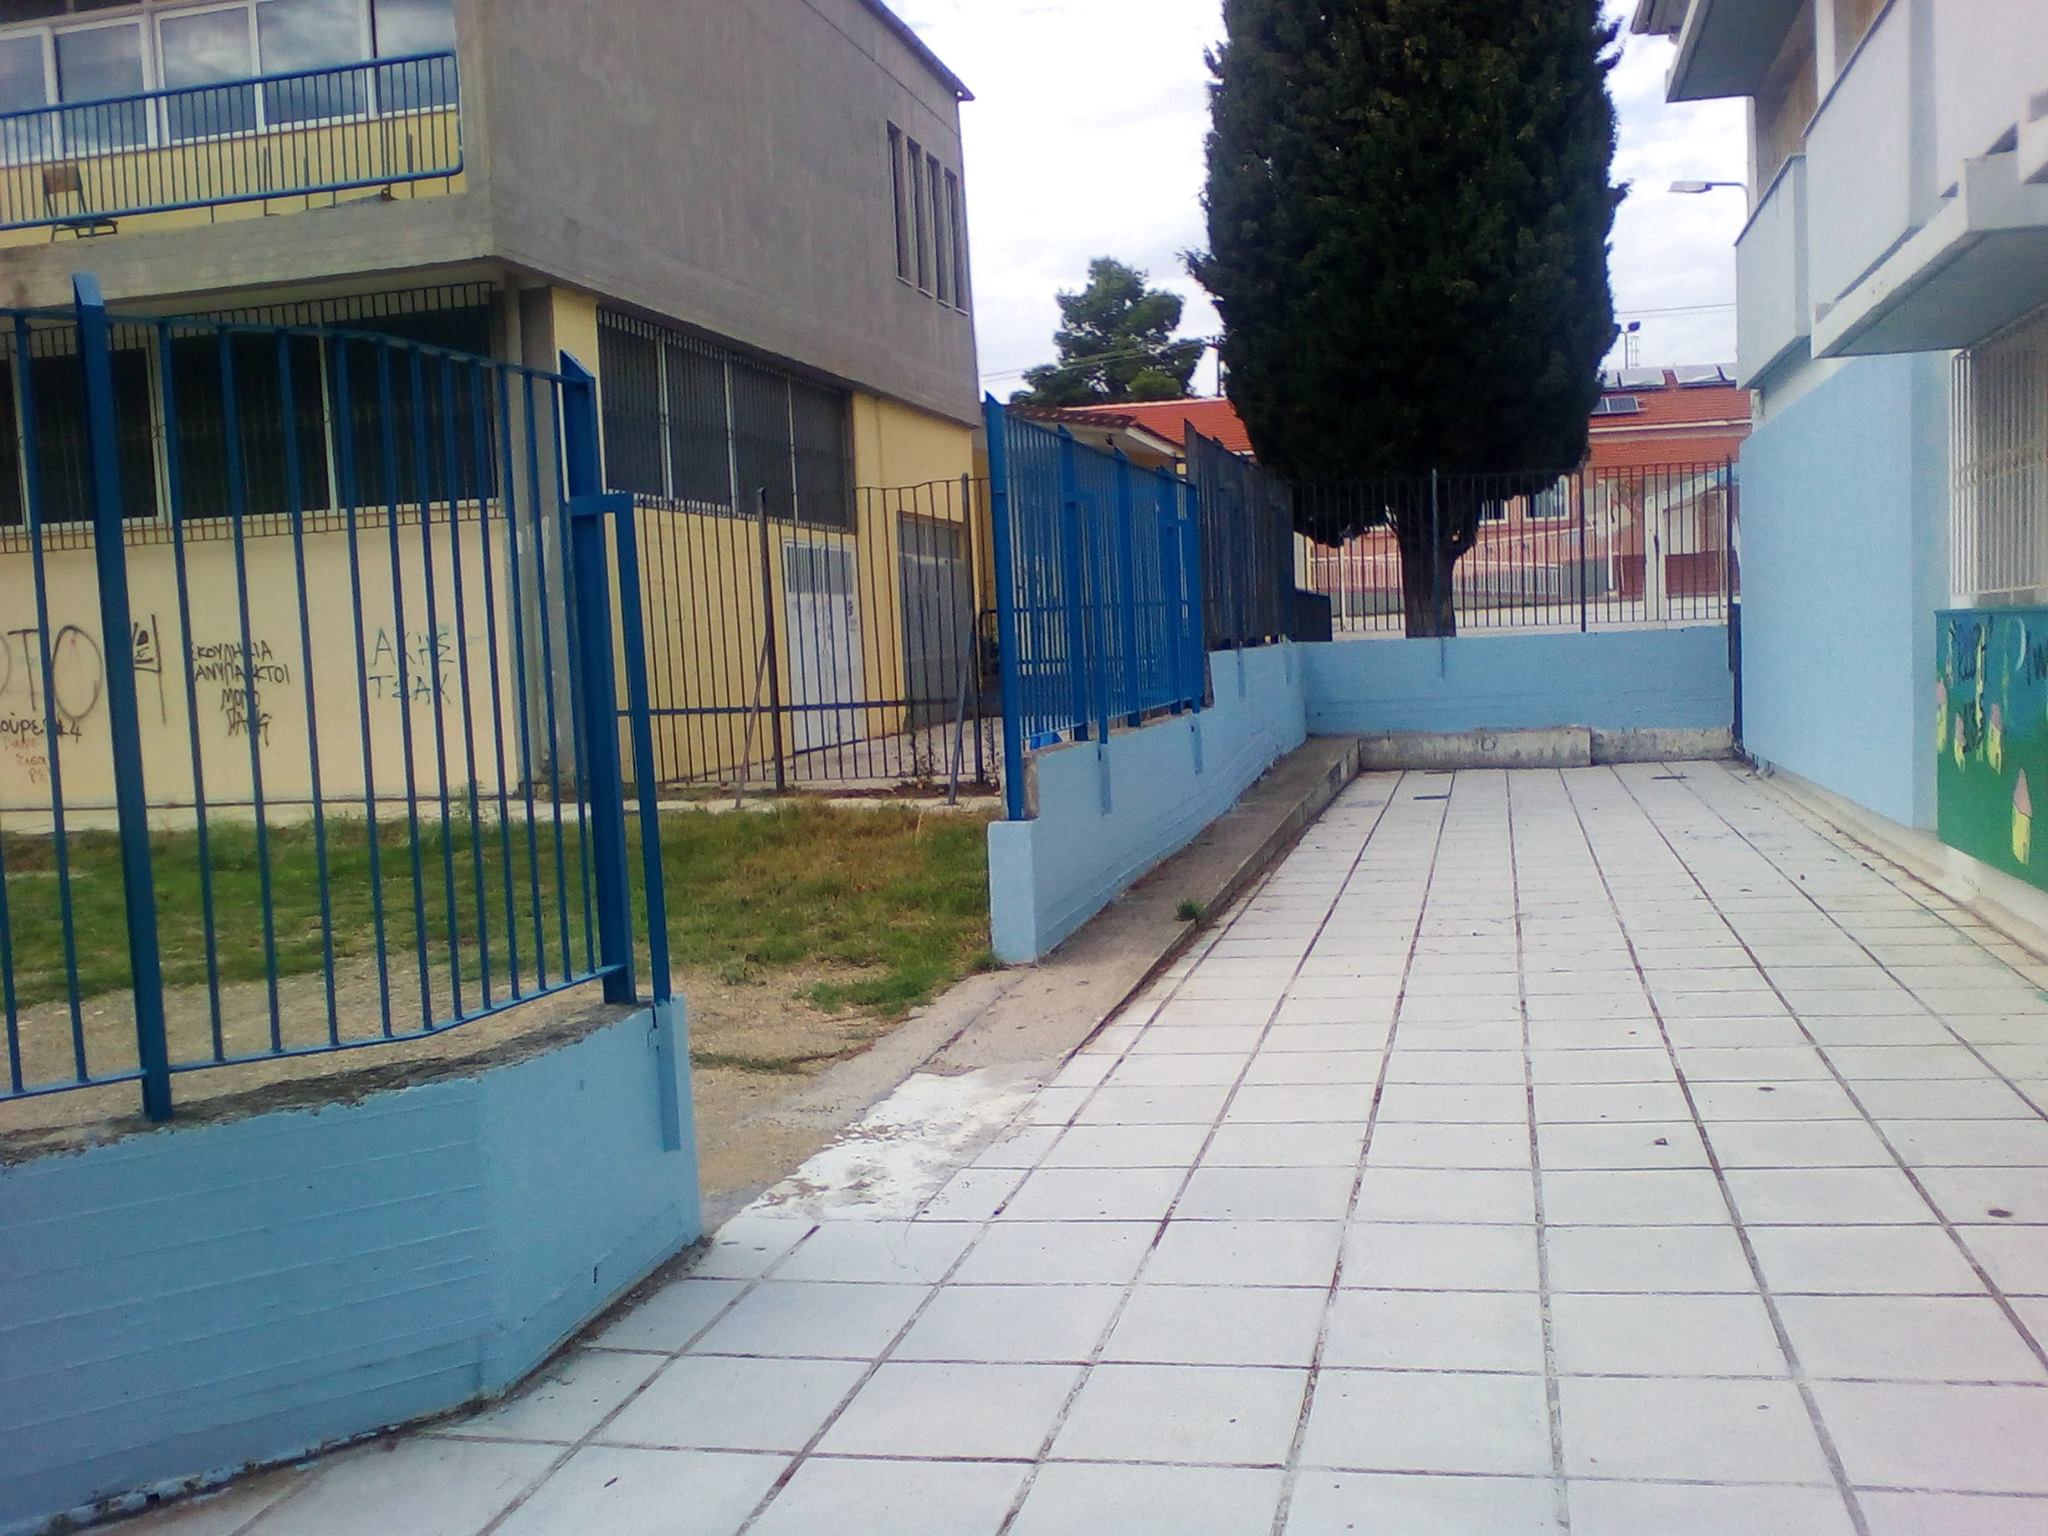 Τα σχολεία στον Δήμο Θερμαϊκού που θα έχουν ολοήμερο πρόγραμμα εώς τις 17:30